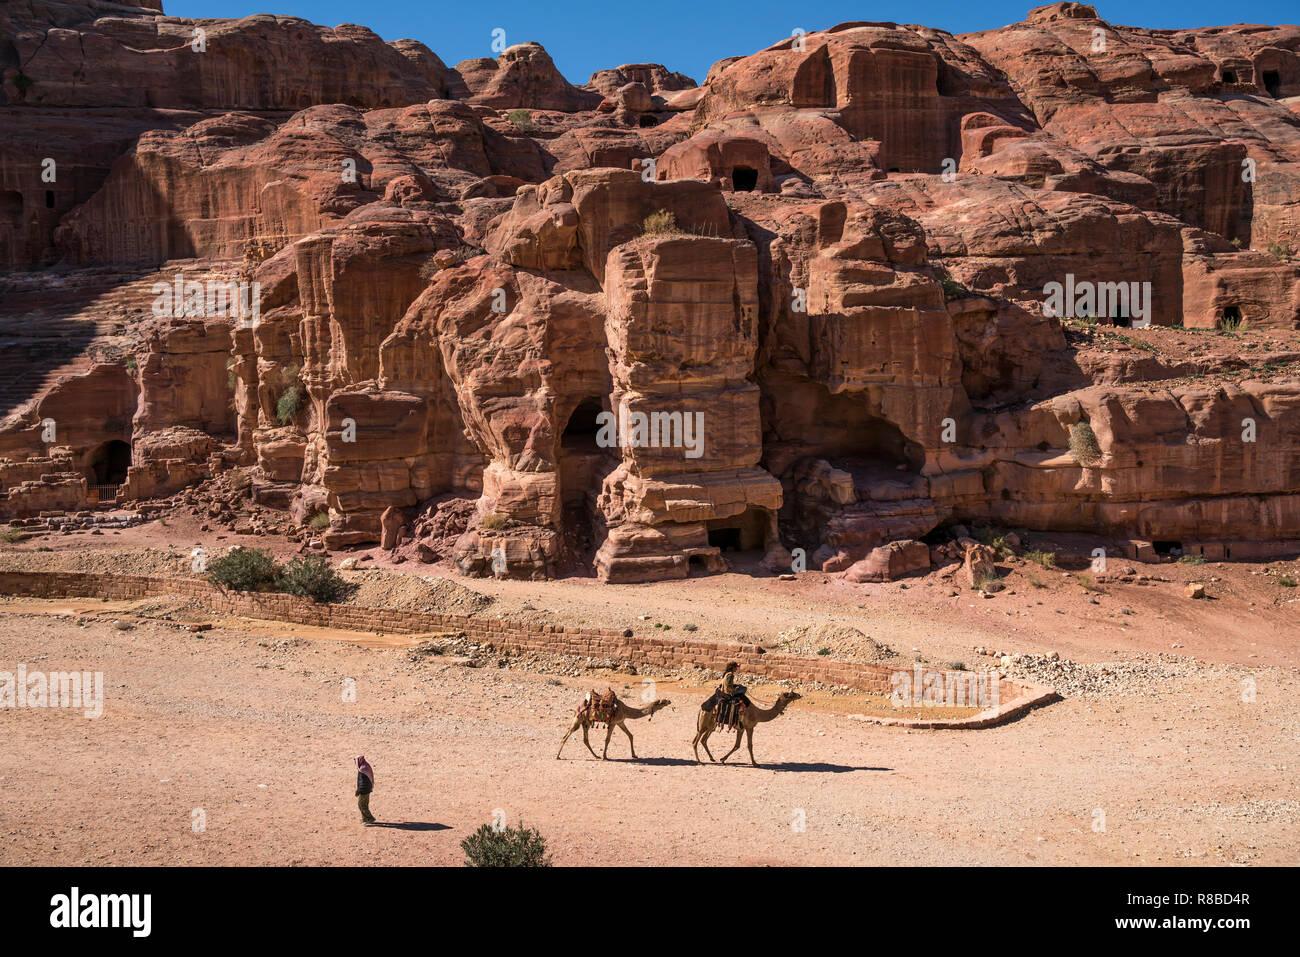 Kamele in der historischen Ruinenstätte Petra, Jordanien, Asien | cammelli all'antica città di Petra, Giordania, Asia Foto Stock